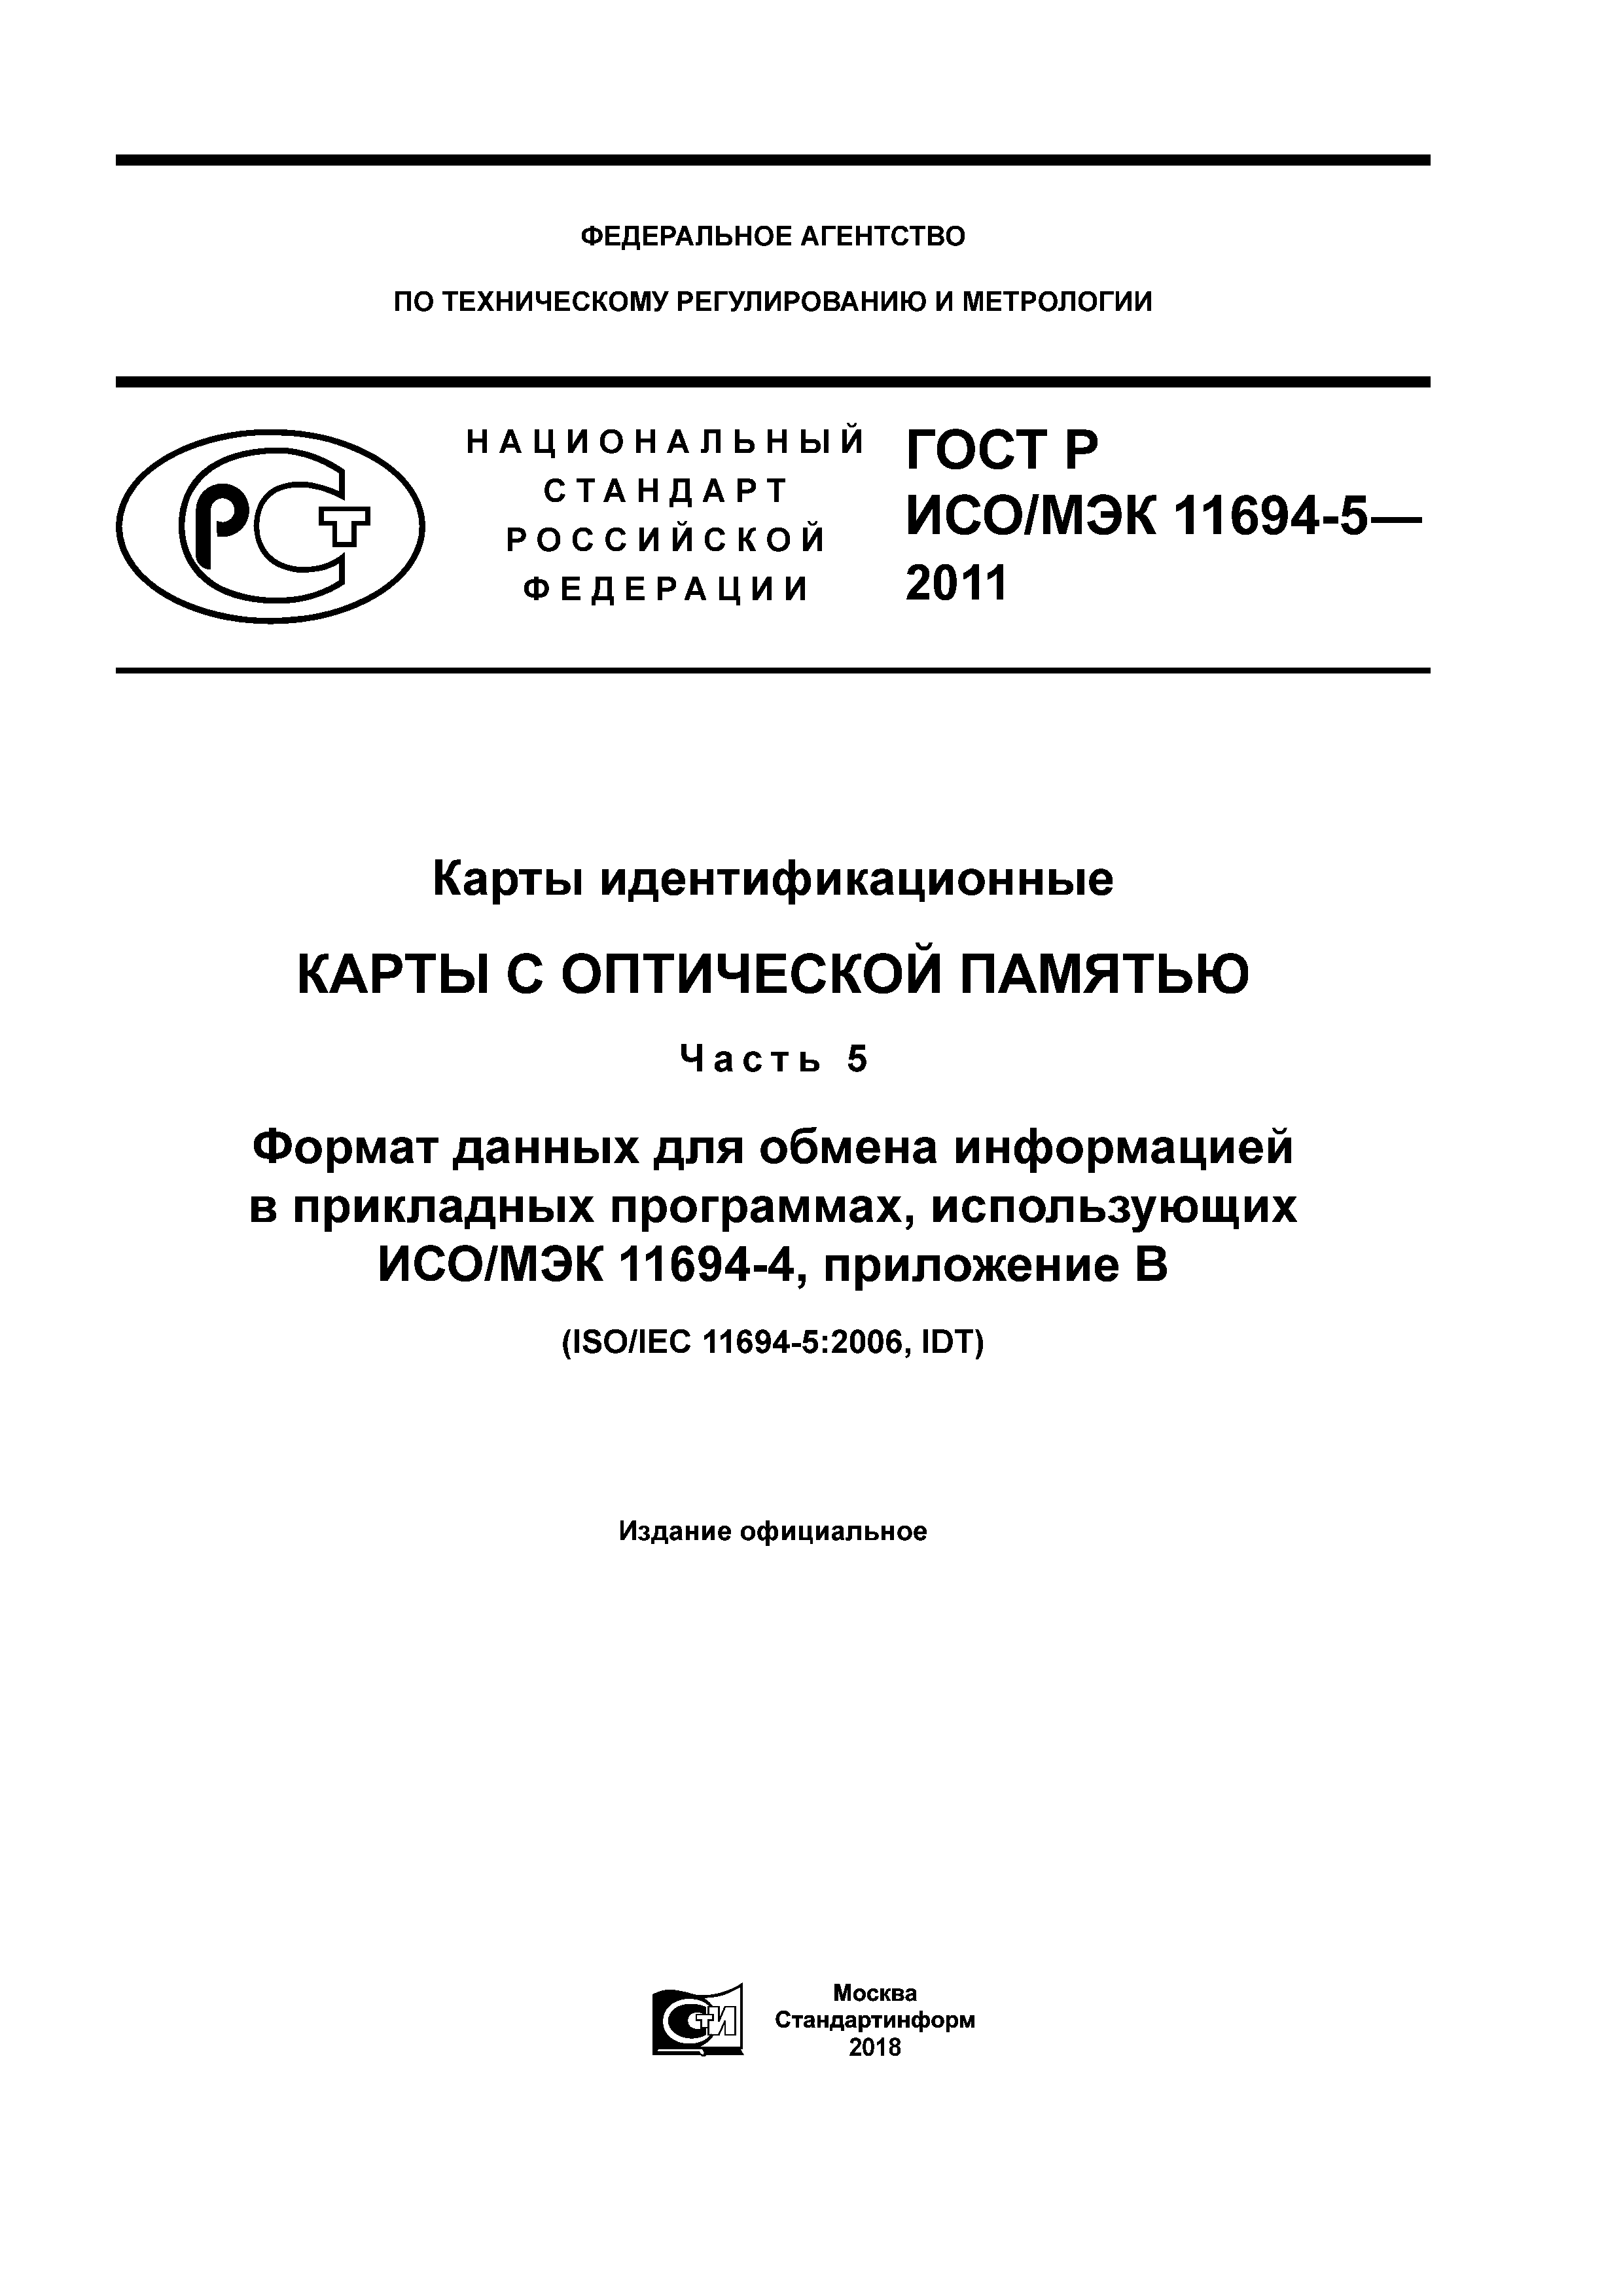 ГОСТ Р ИСО/МЭК 11694-5-2011